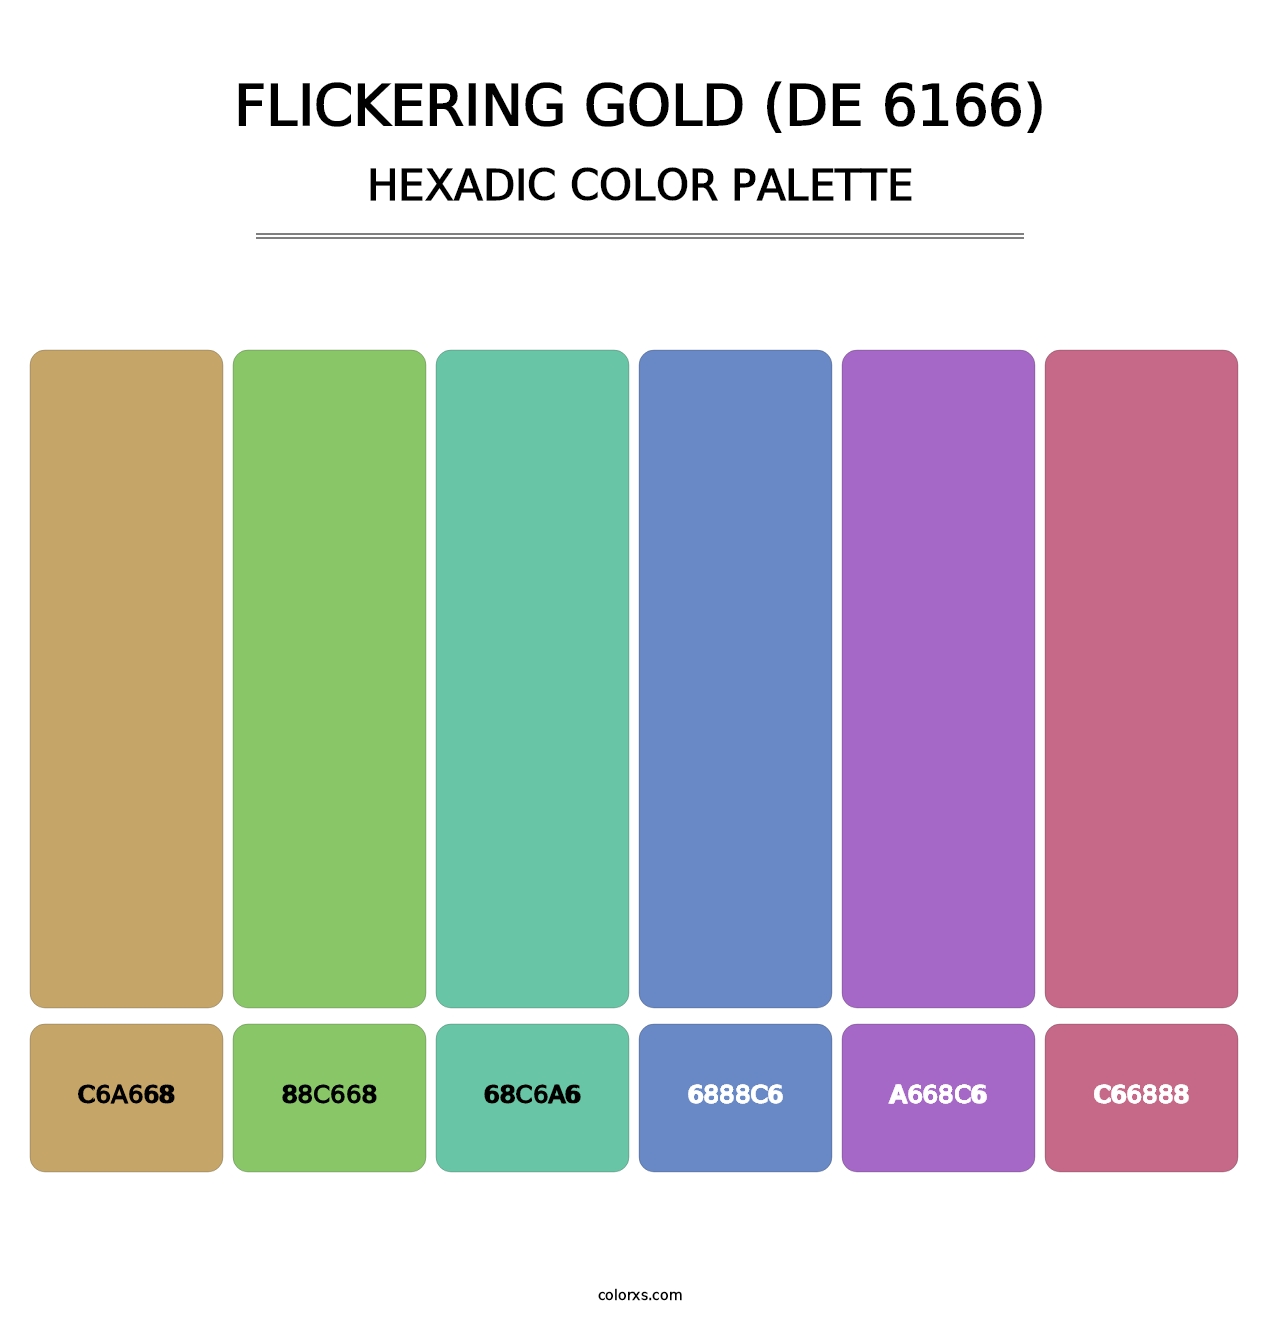 Flickering Gold (DE 6166) - Hexadic Color Palette